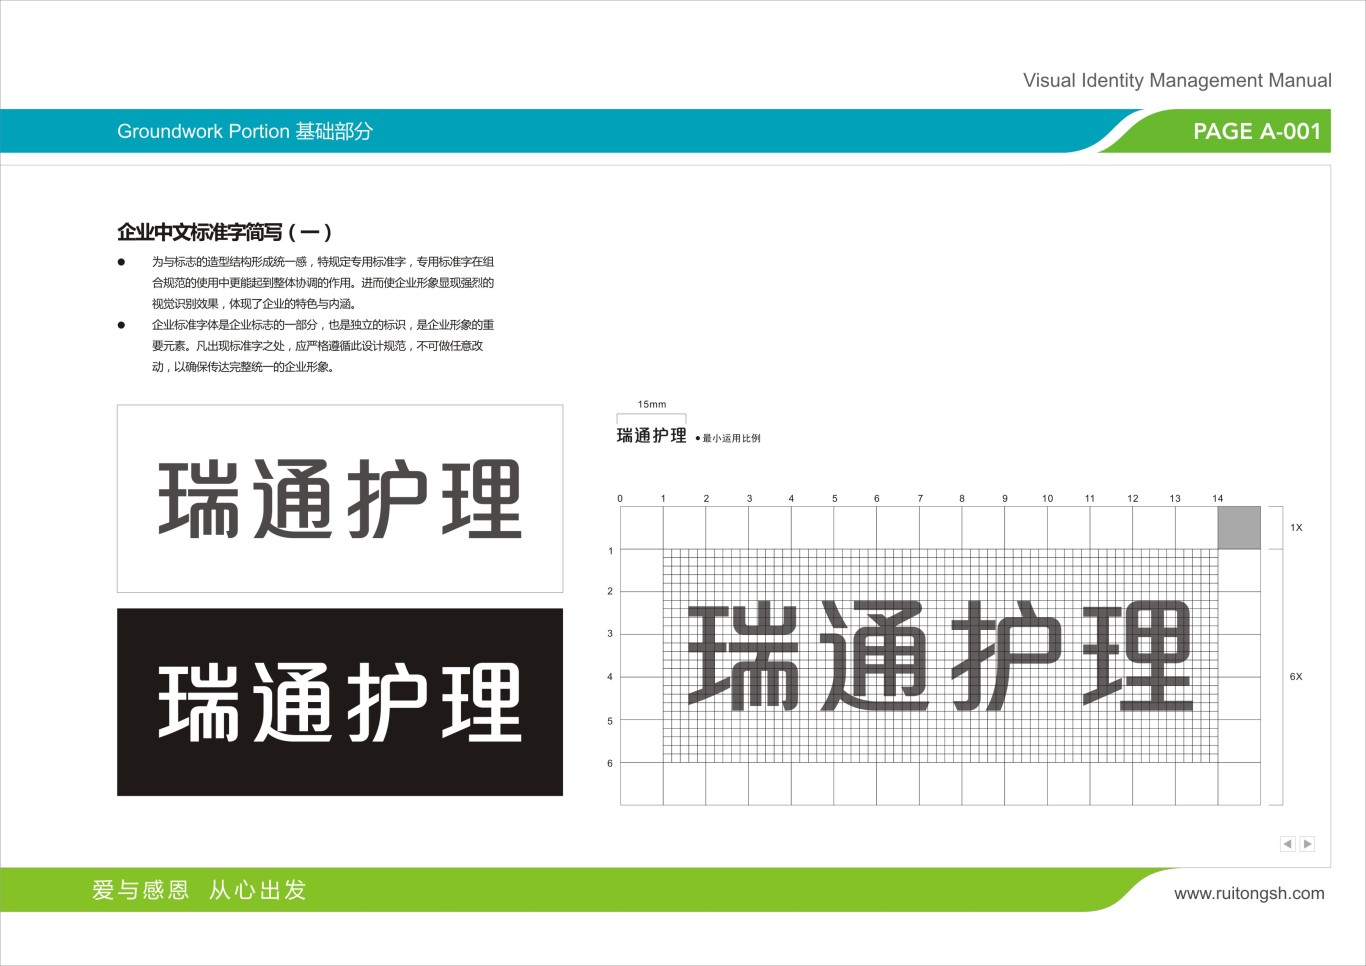 上海瑞通护理院标志VI设计图16